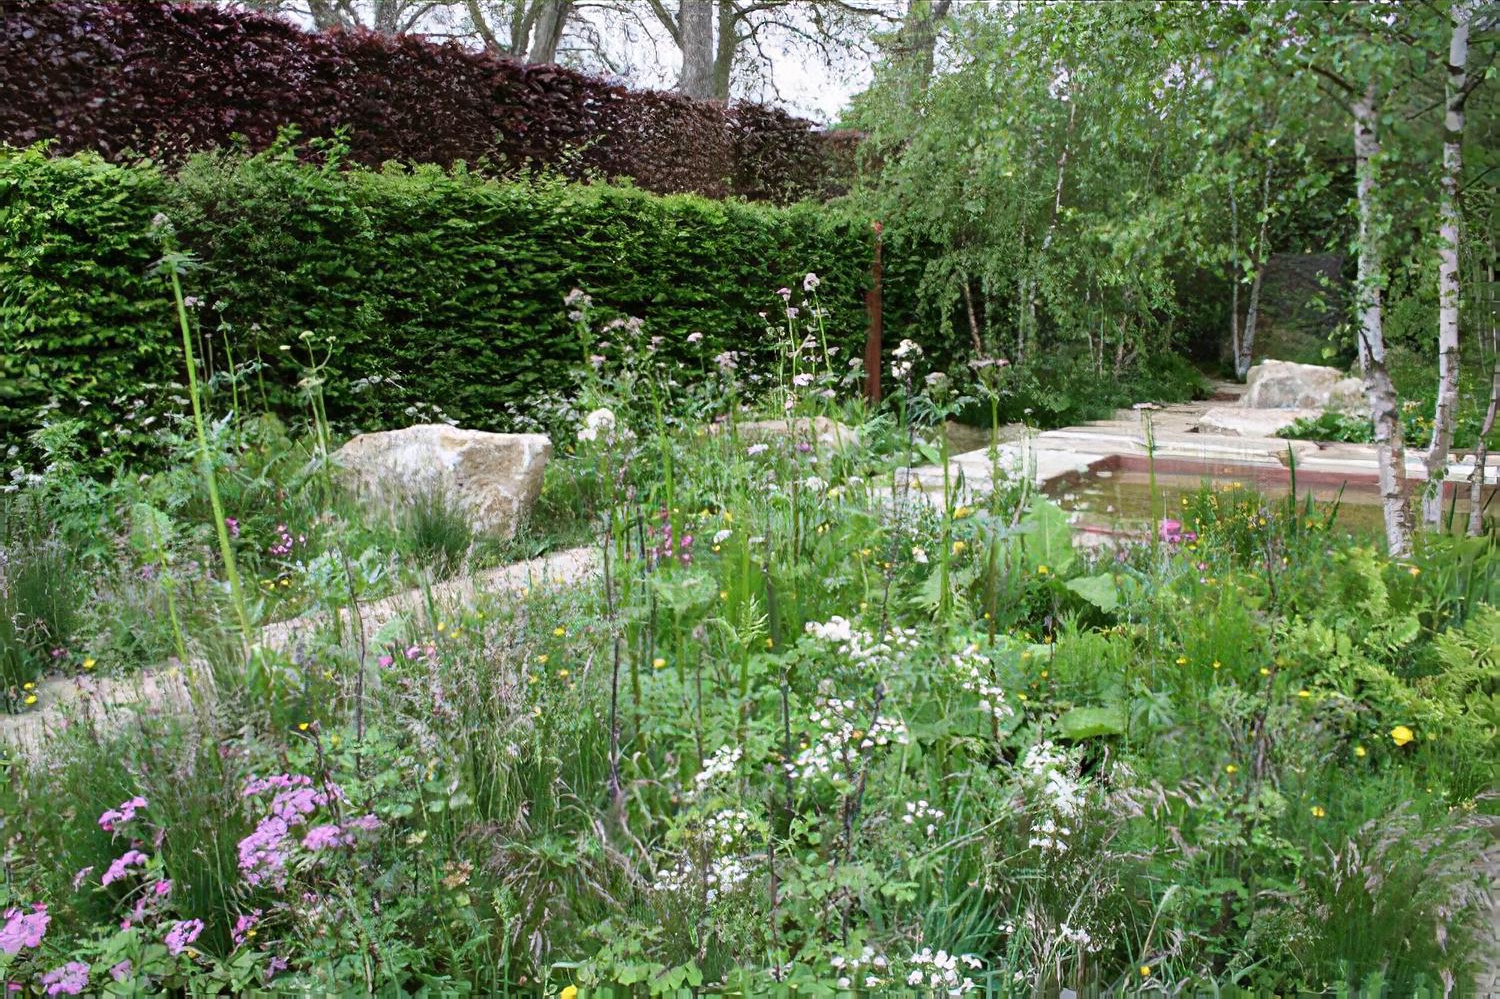 RHS Chelsea Flower Show 2012 The Daily Telegraph Garden designed by garden designer Sarah Price